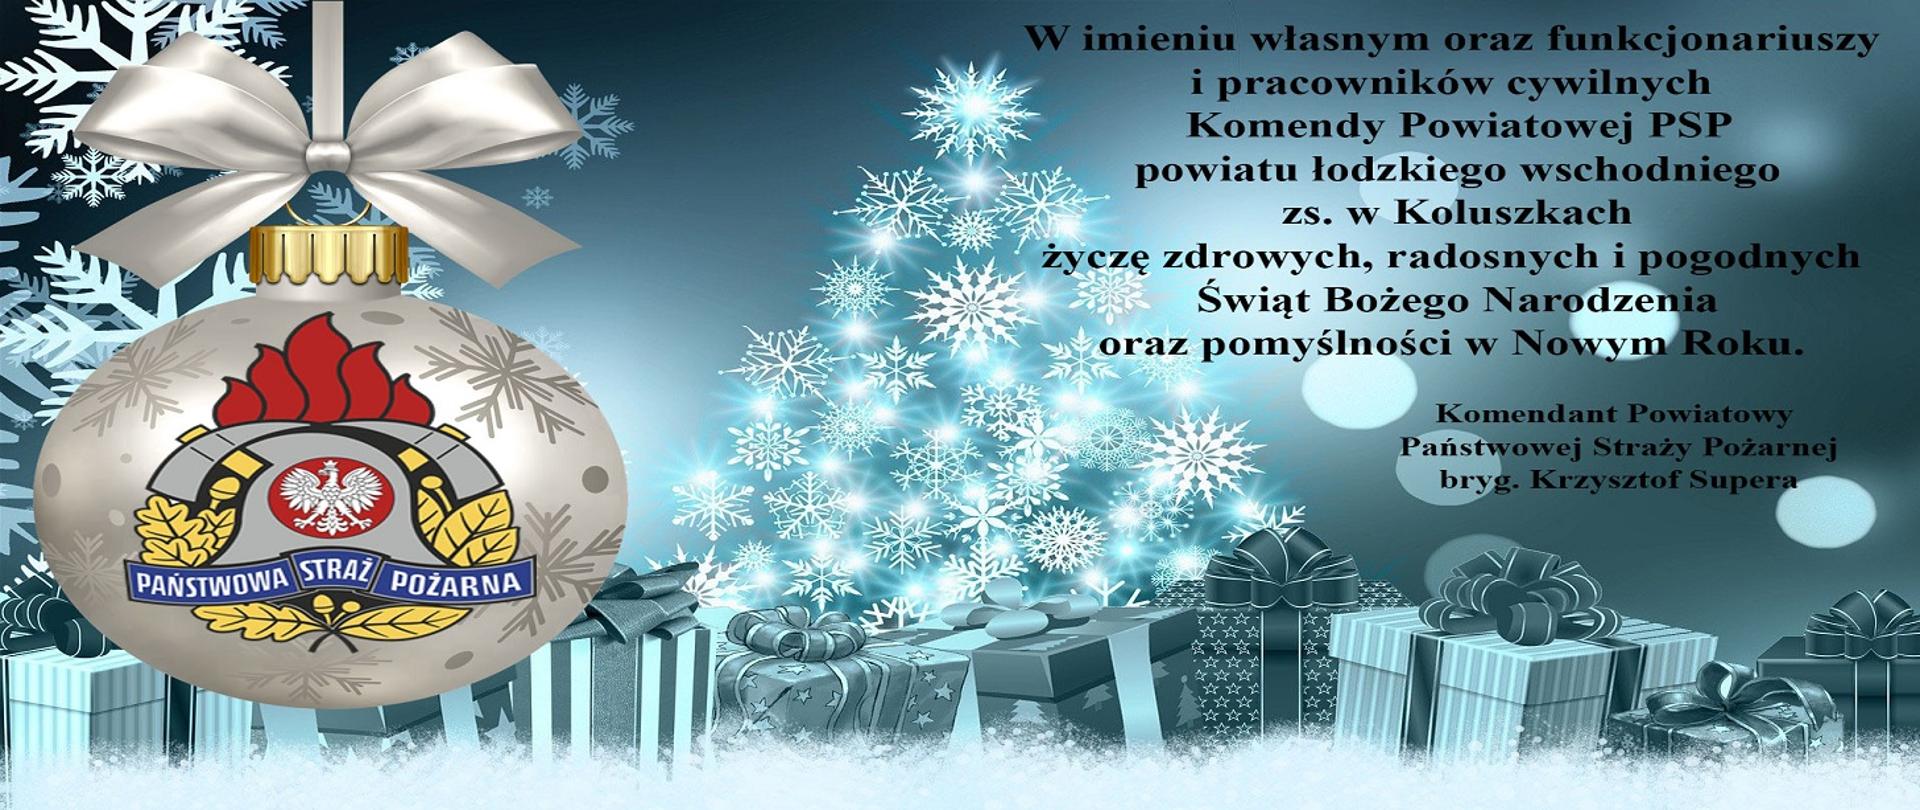 Zdjęcie przedstawia kartkę świąteczną a na niej życzenia; "W imieniu własnym oraz funkcjonariuszy i pracowników cywilnych Komendy Powiatowej PSP powiatu łódzkiego wschodniego zs. w Koluszkach życzę zdrowych, radosnych i pogodnych Świąt Bożego Narodzenia oraz pomyślności w Nowym Roku". Grafika przedstawia choinkę z płatów śniegu, pod nią prezenty, po lewej widoczna jest srebrna babka z logiem Państwowej Straży Pożarnej. 